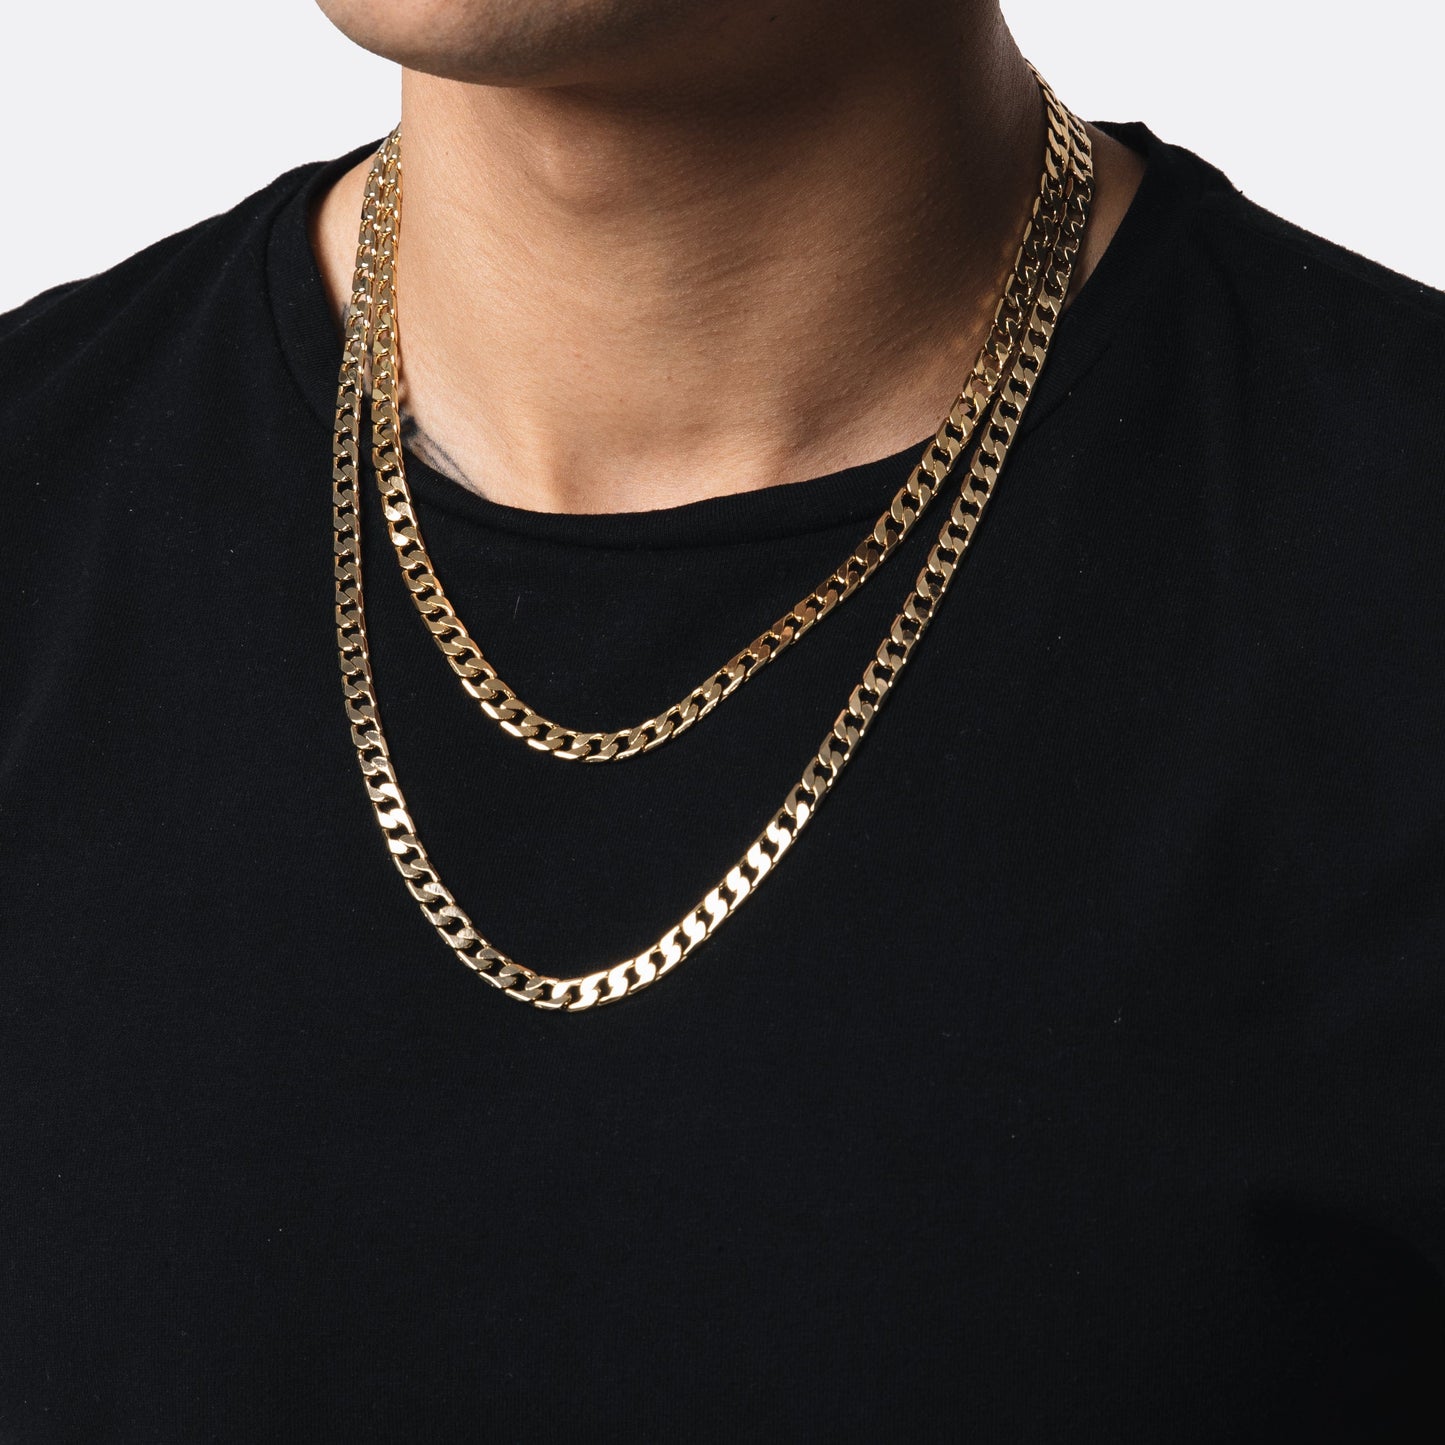 Chain – All Wear Jewellery